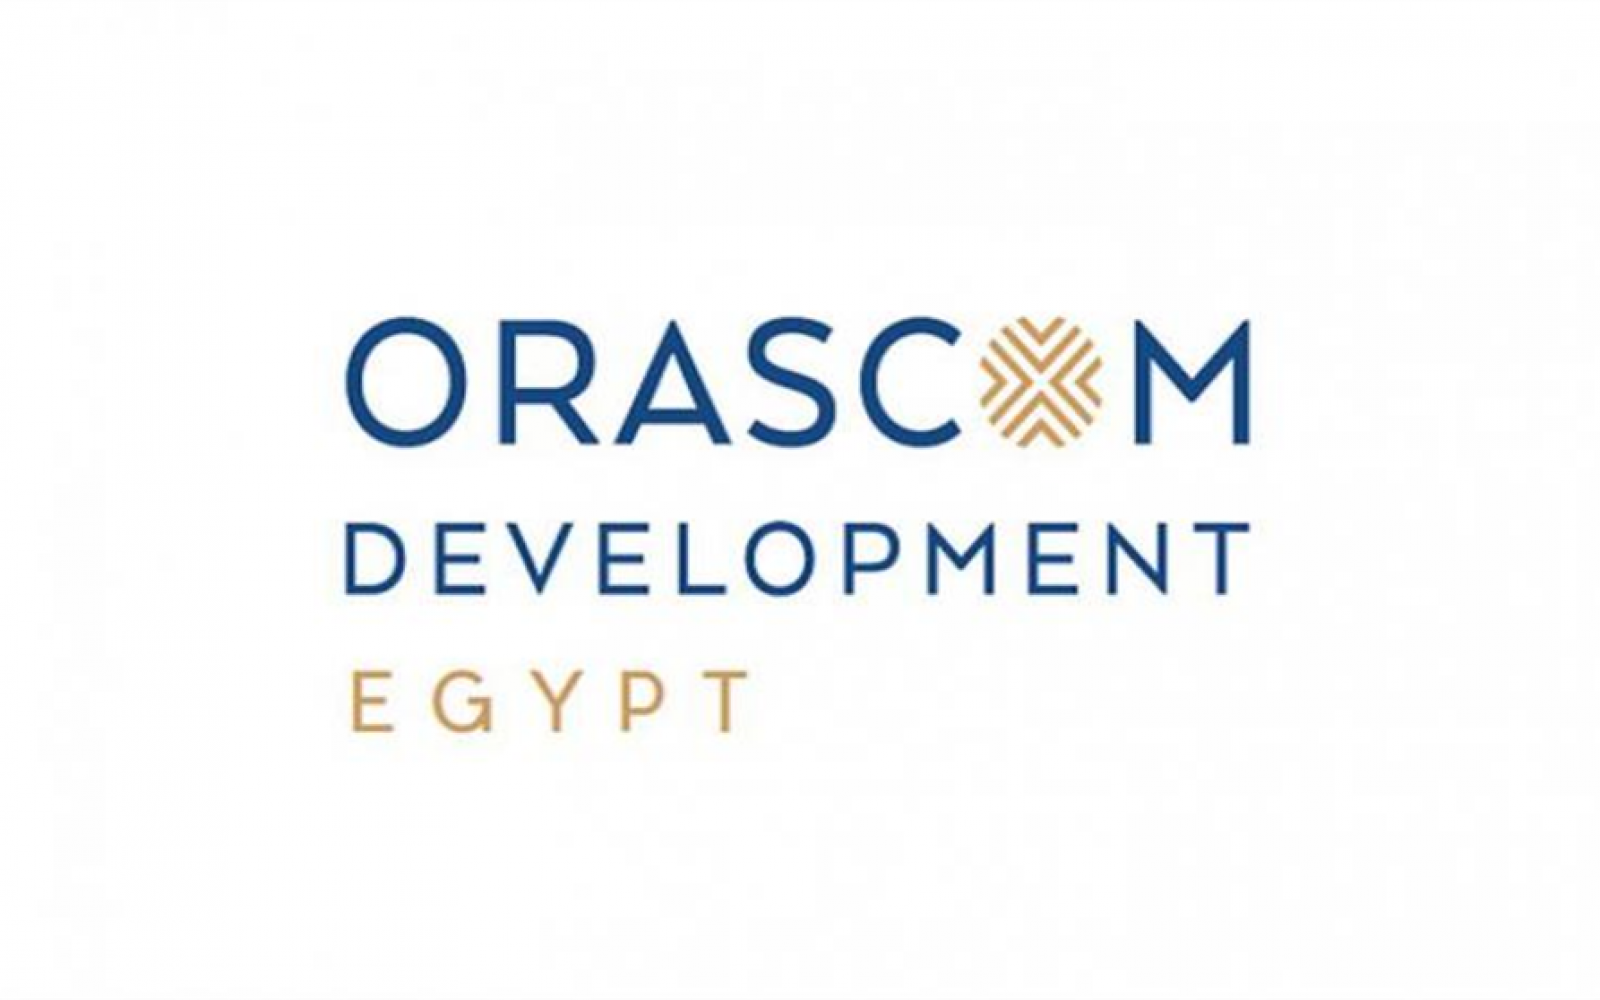 " أوراسكوم للتنمية مصر" تحفز العاملين بأسهم قيمتها 1.5 مليون جنيه